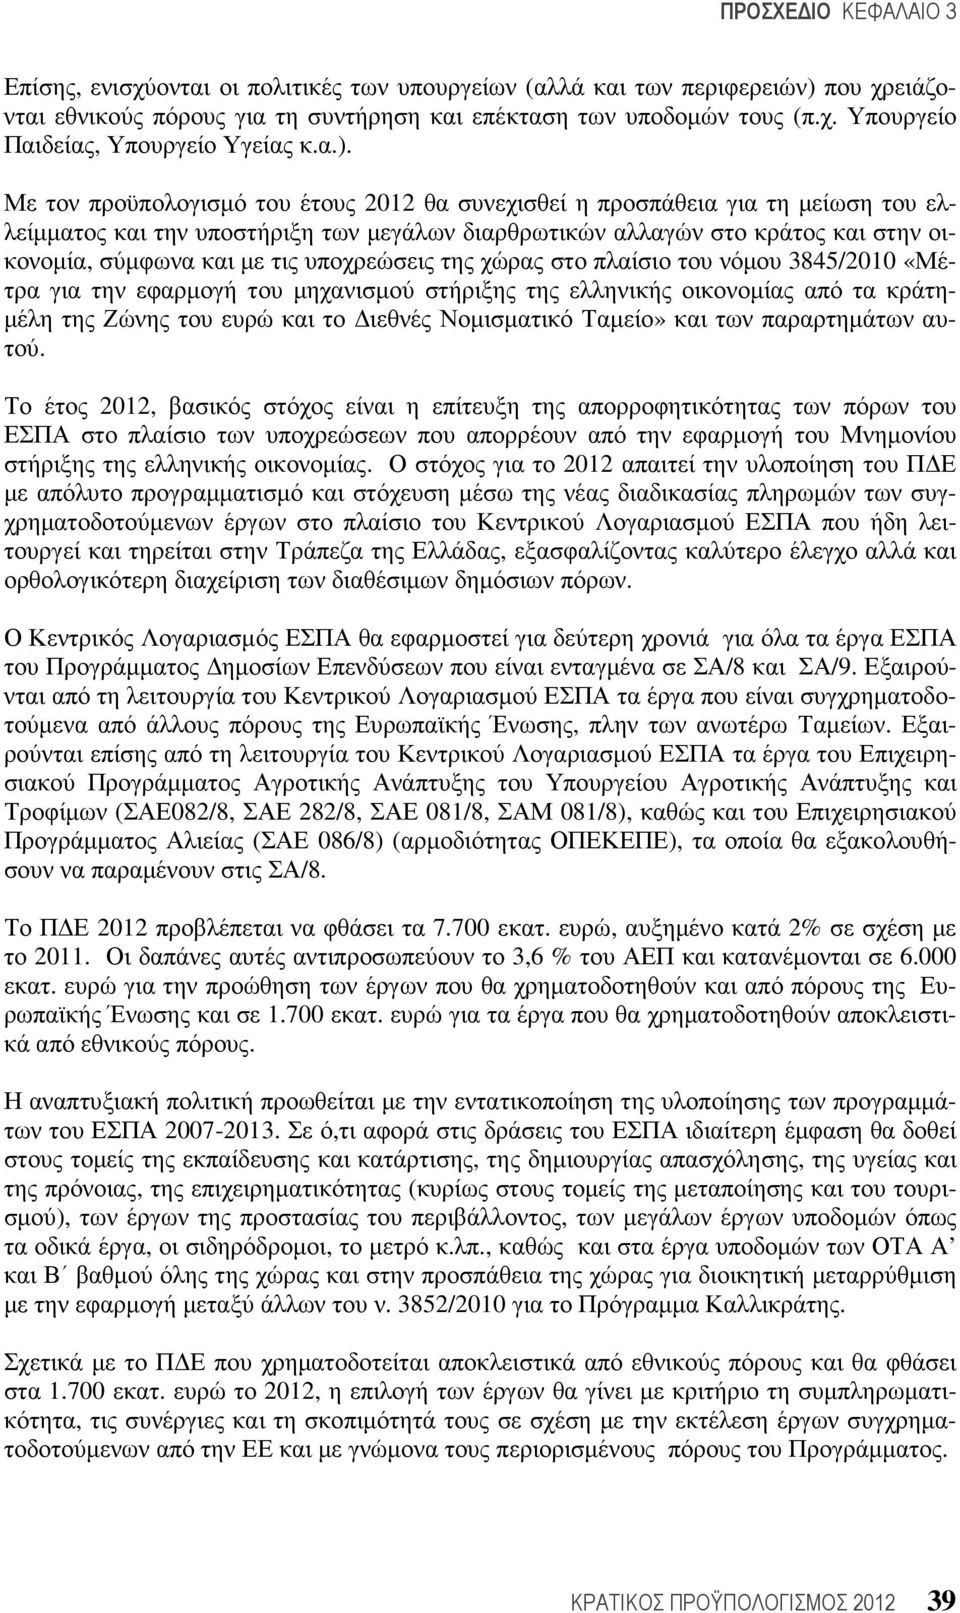 υποχρεώσεις της χώρας στο πλαίσιο του νόµου 3845/2010 «Μέτρα για την εφαρµογή του µηχανισµού στήριξης της ελληνικής οικονοµίας από τα κράτη- µέλη της Ζώνης του ευρώ και το ιεθνές Νοµισµατικό Ταµείο»